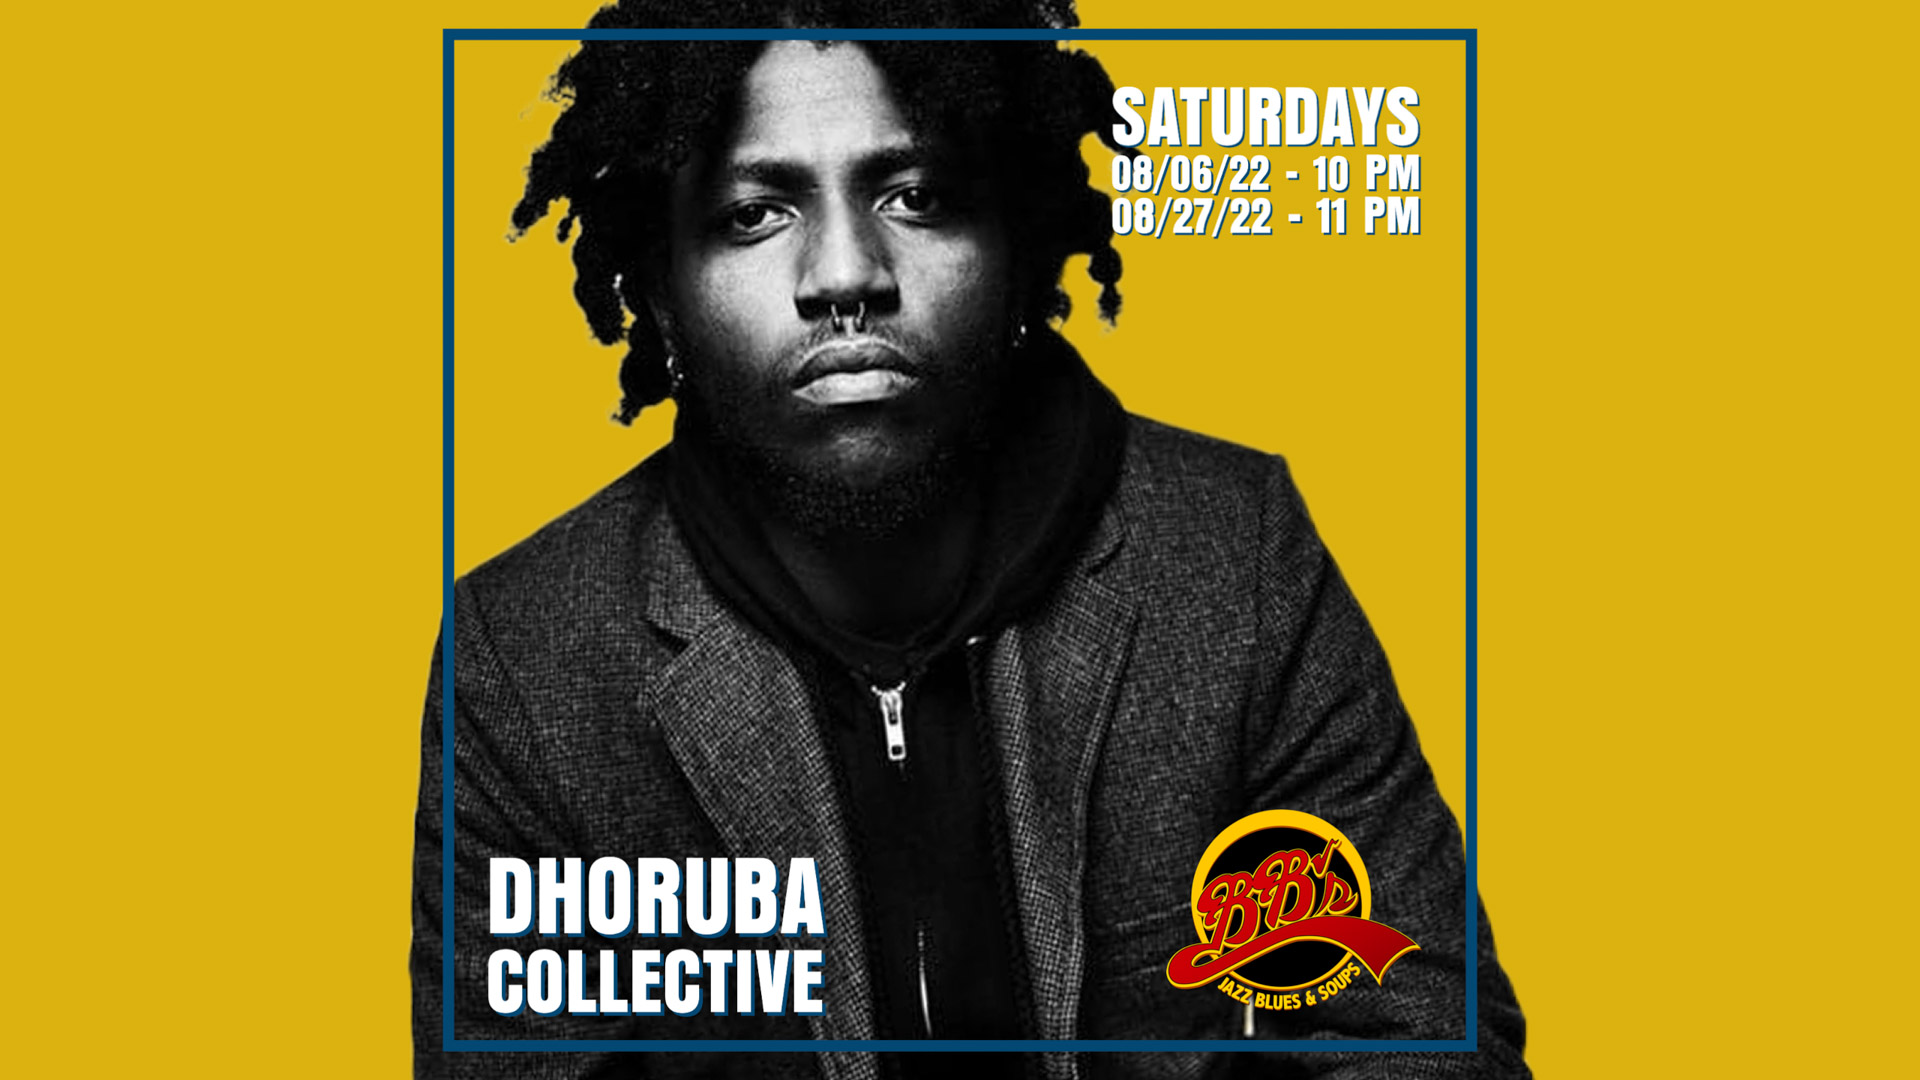 Dhoruba Collective